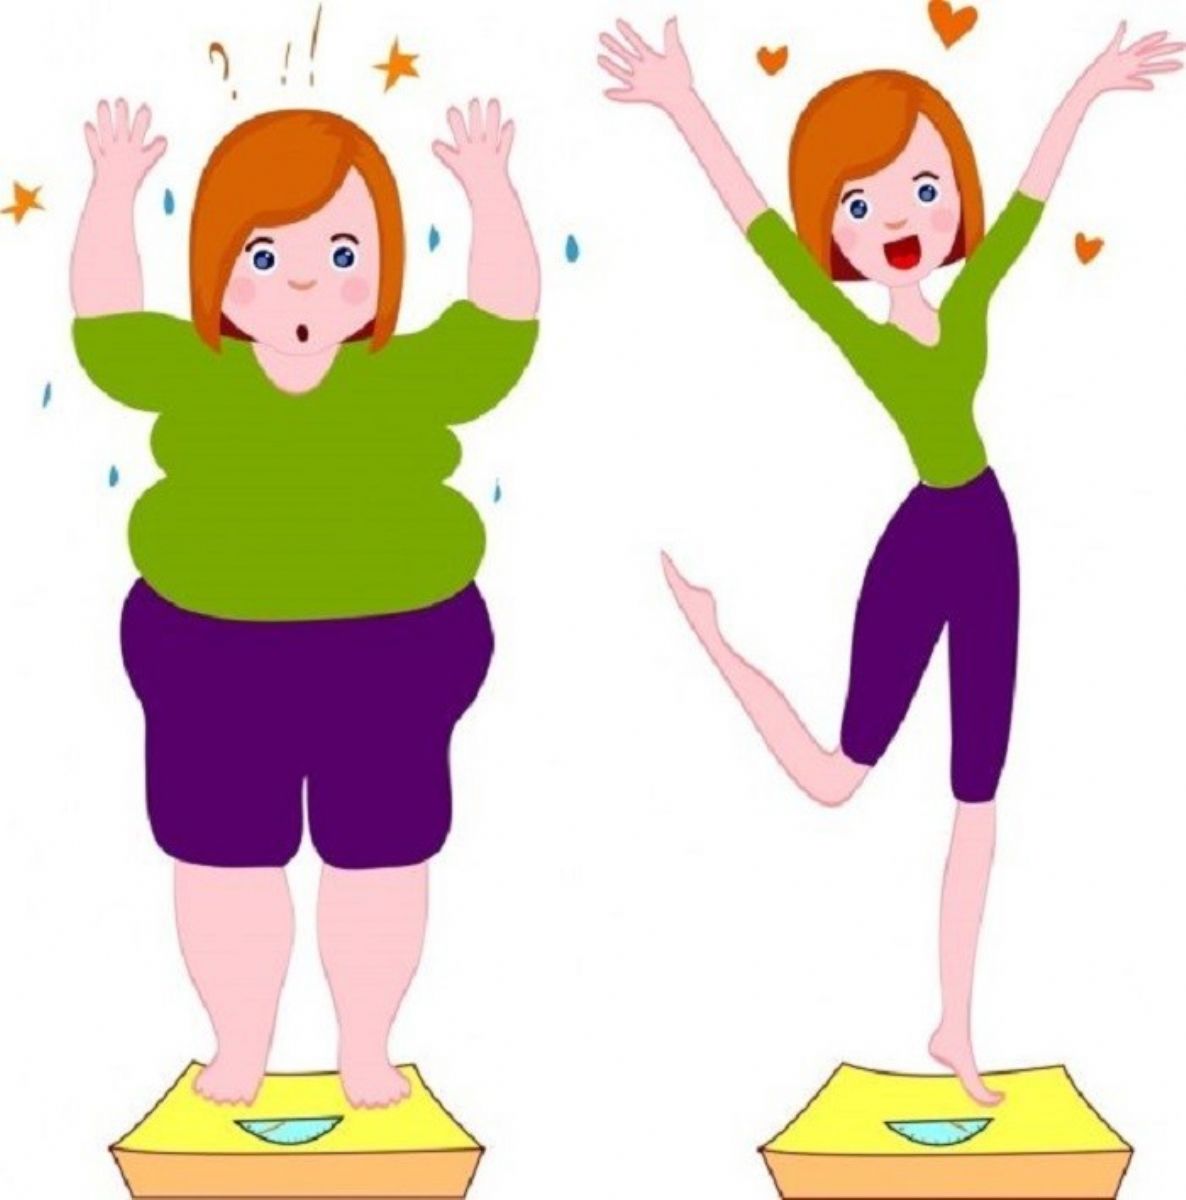 أقوى 7 ​​طرق لخسارة الوزن والتخسيس وإنقاص الوزن بدون رجيم.  تم النشر بتاريخ الأحد 17 05 2020 23 20 أقوى 7 ​​طرق لخسارة الوزن والتنحيف وخسارة الوزن بدون رجيم.